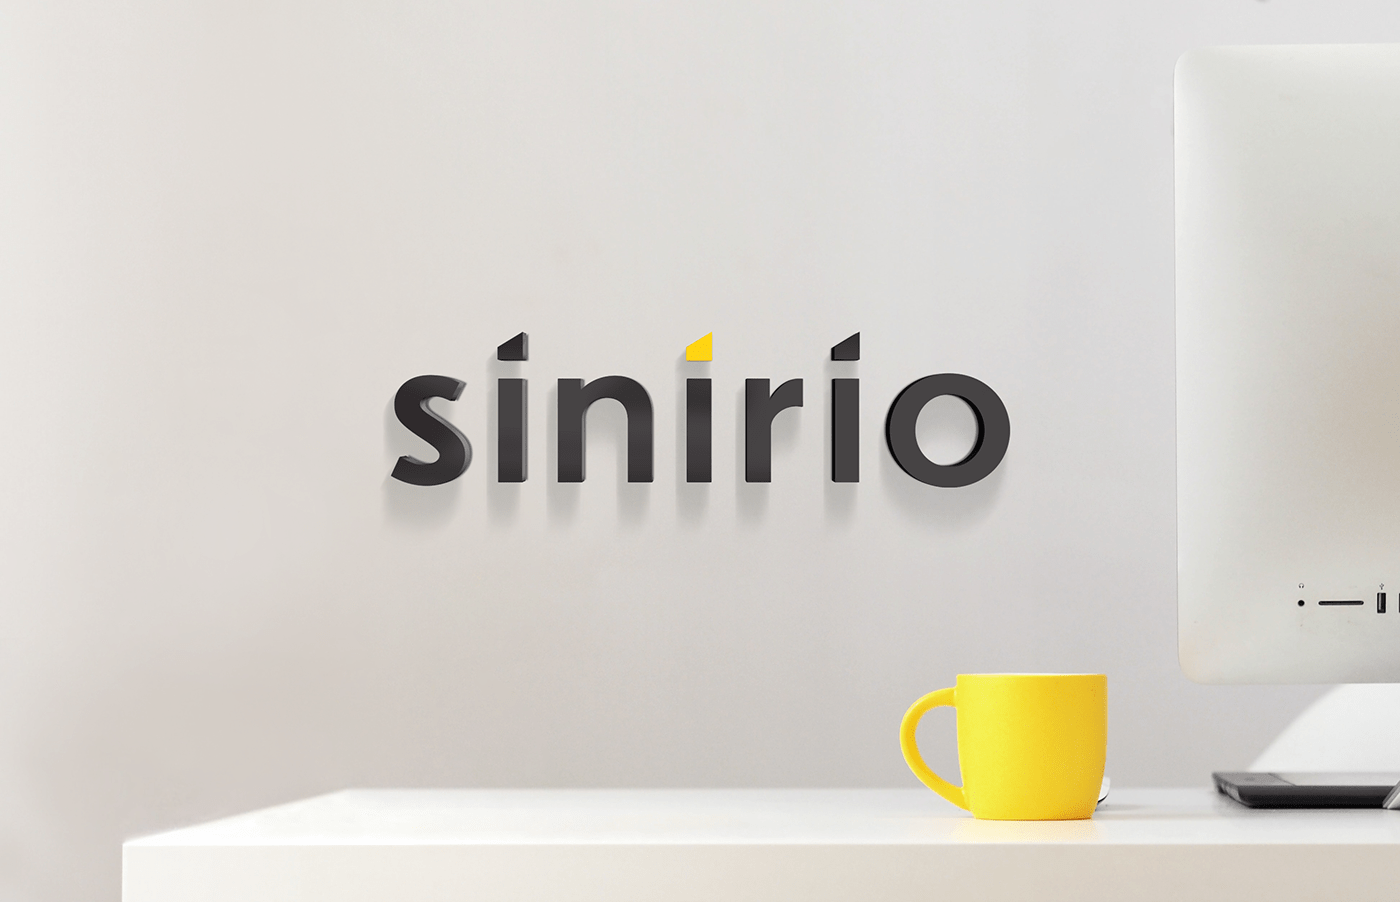 Sinirio sinirio studio branding  Web Design  logo